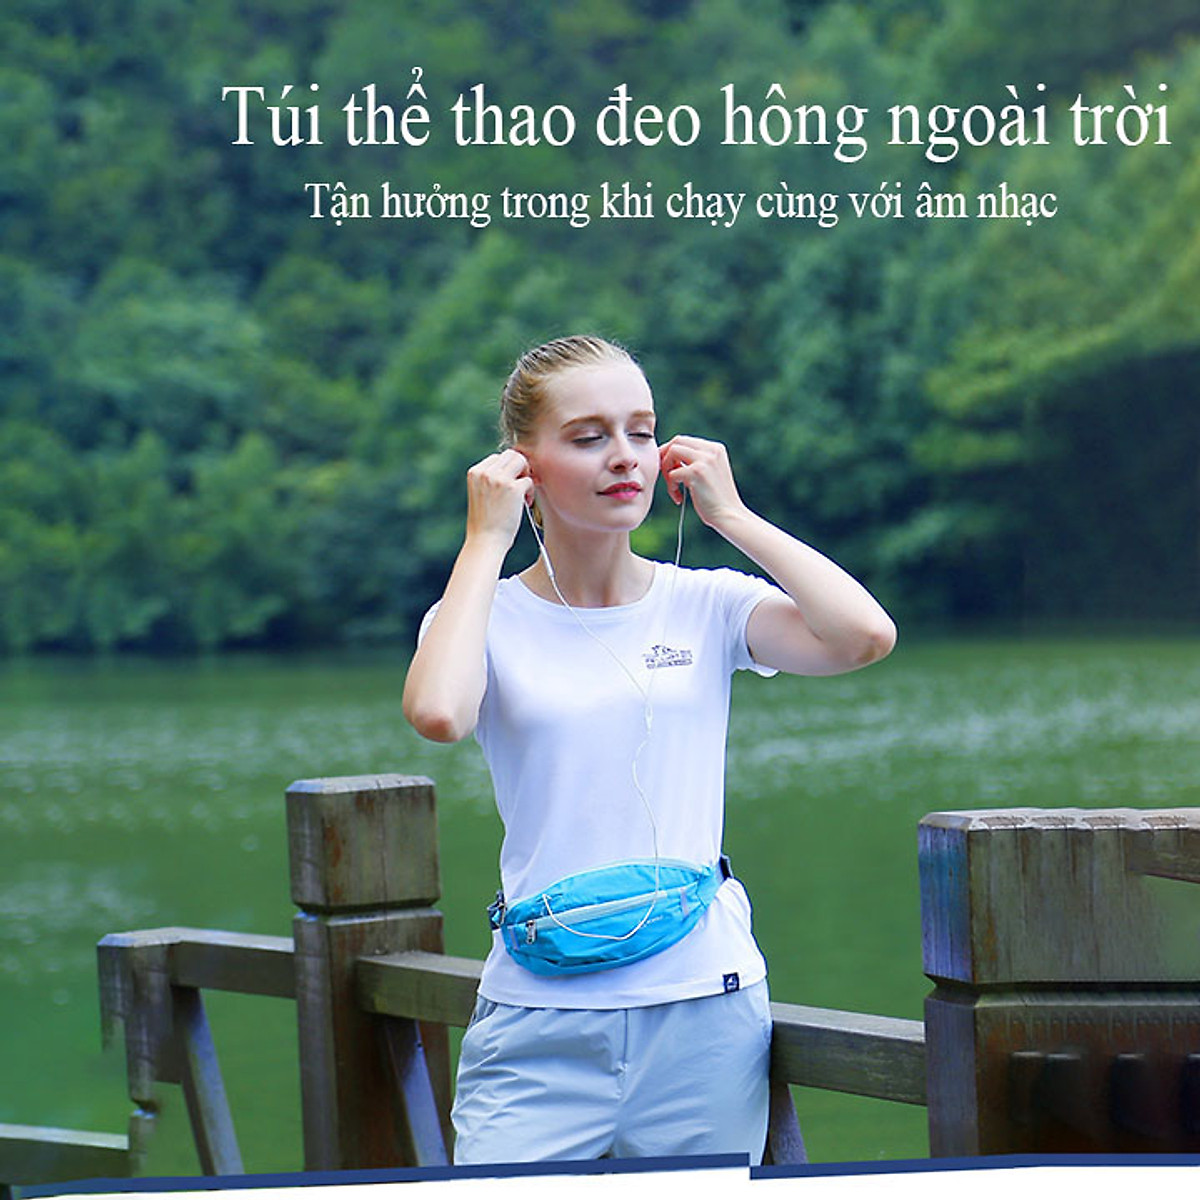 Săn Ngay Đai chạy bộ thể thao Túi đeo hông Túi đeo bụng chạy bộ tập gym thể thao du lịch hàng chính hãng Tuyệt Vời